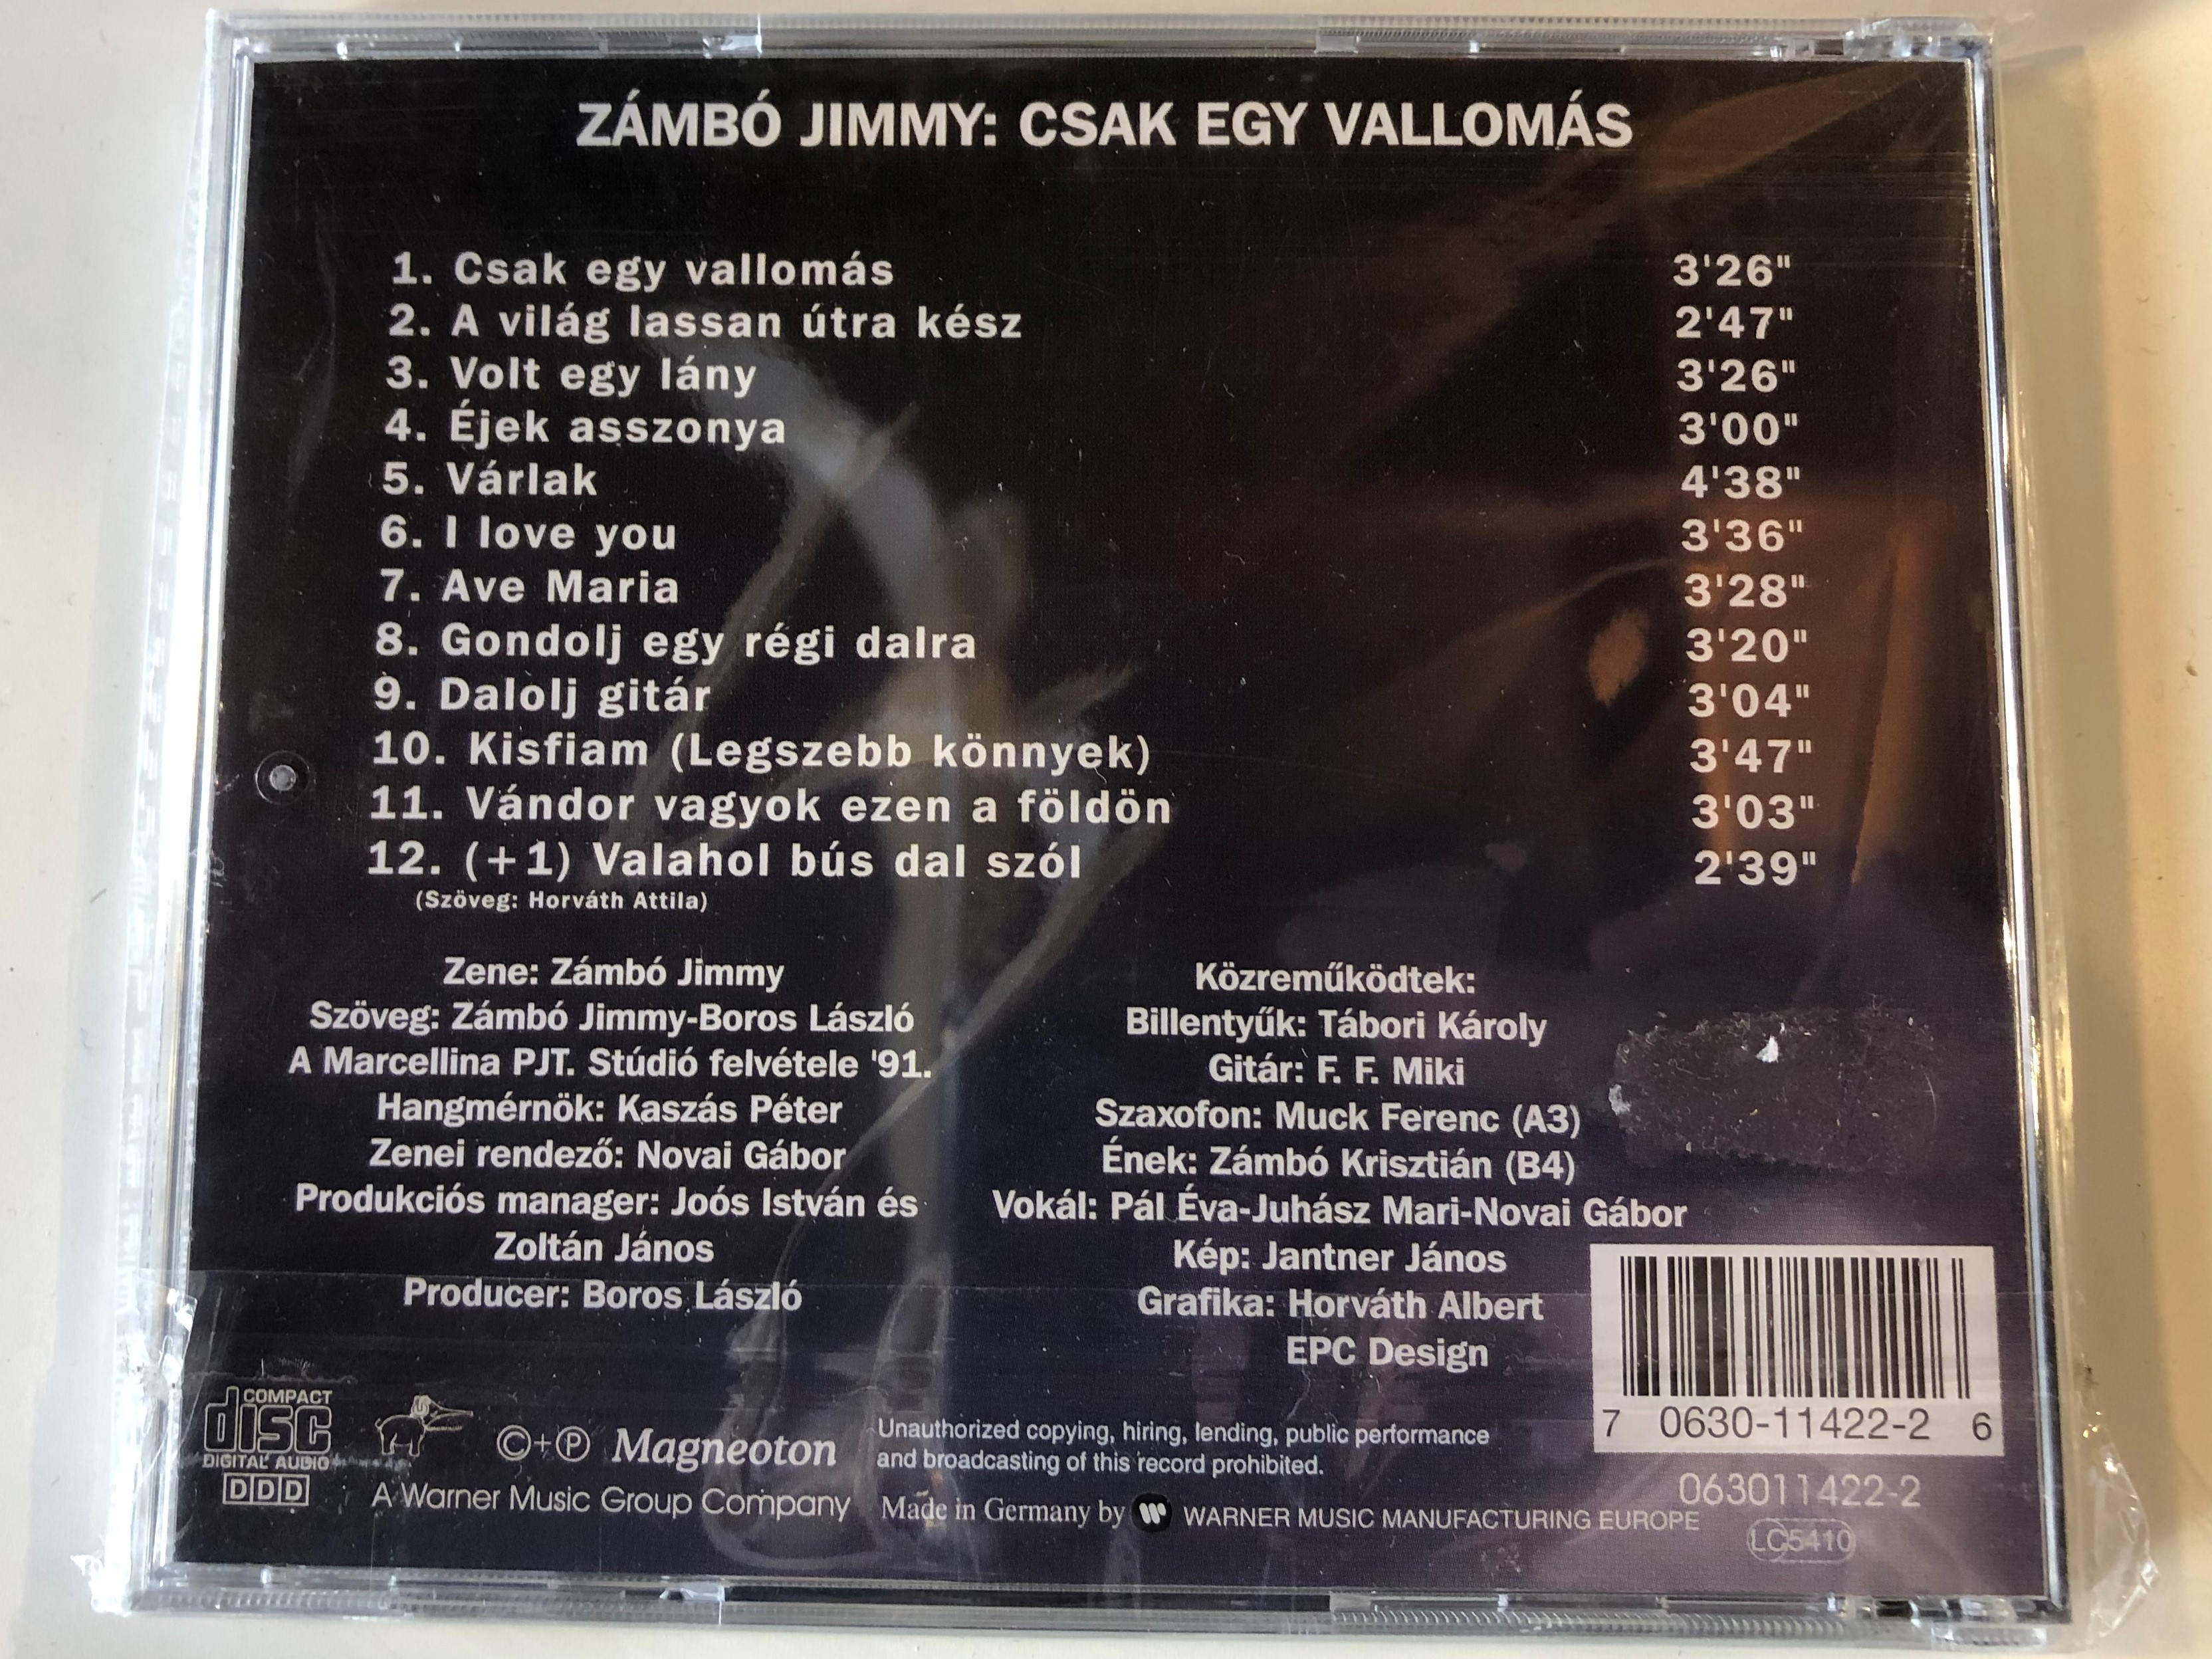 z-mb-jimmy-csak-egy-vallom-s-ug-kiadas-magneoton-audio-cd-1995-0630-11422-2-2-.jpg